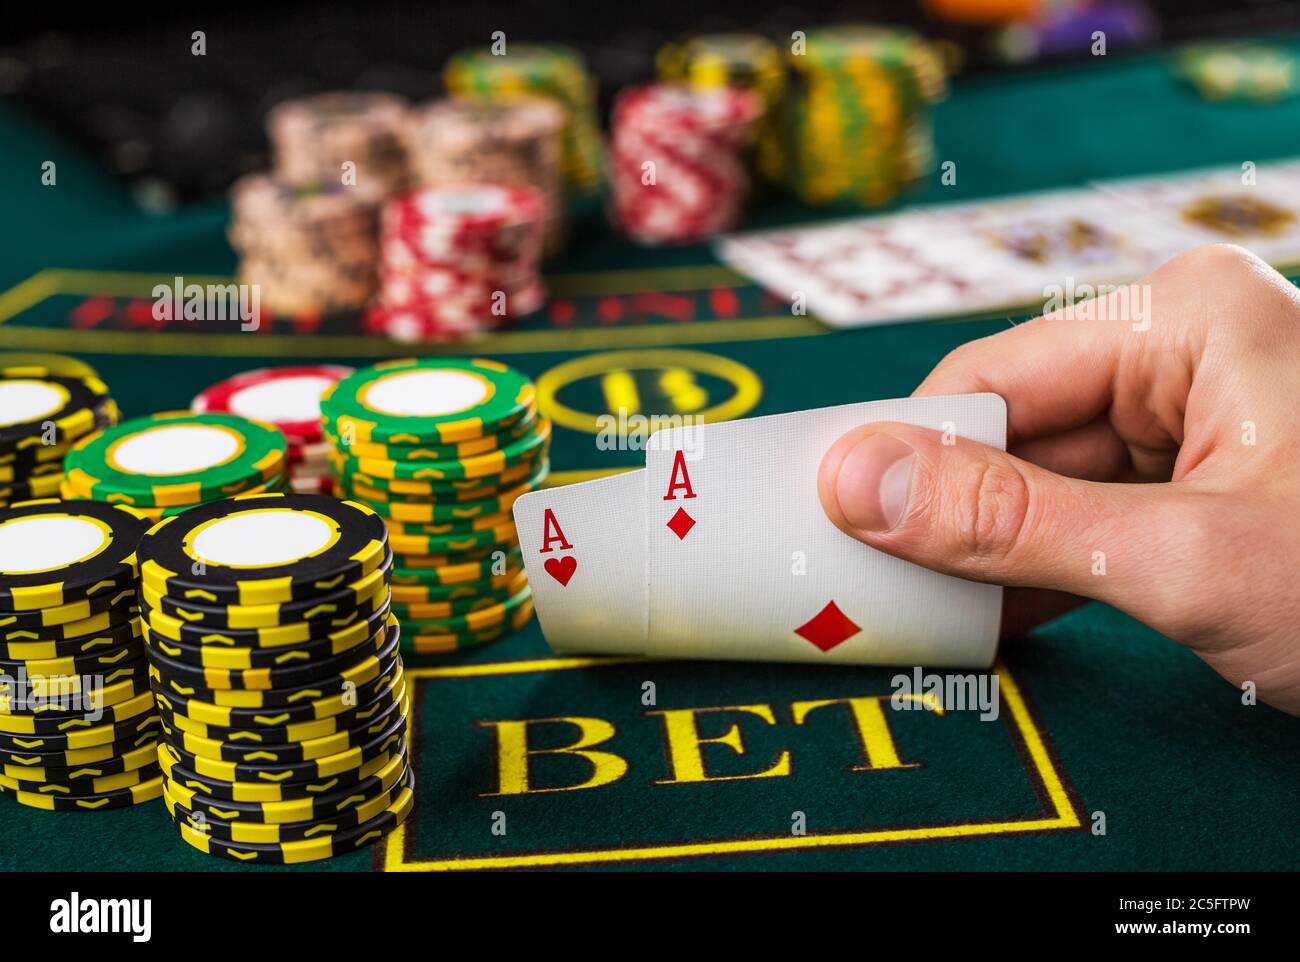 Азартные игры azart games casino pp ru. Покер. Игра в Покер. Покер игра казино. Казино азарт.